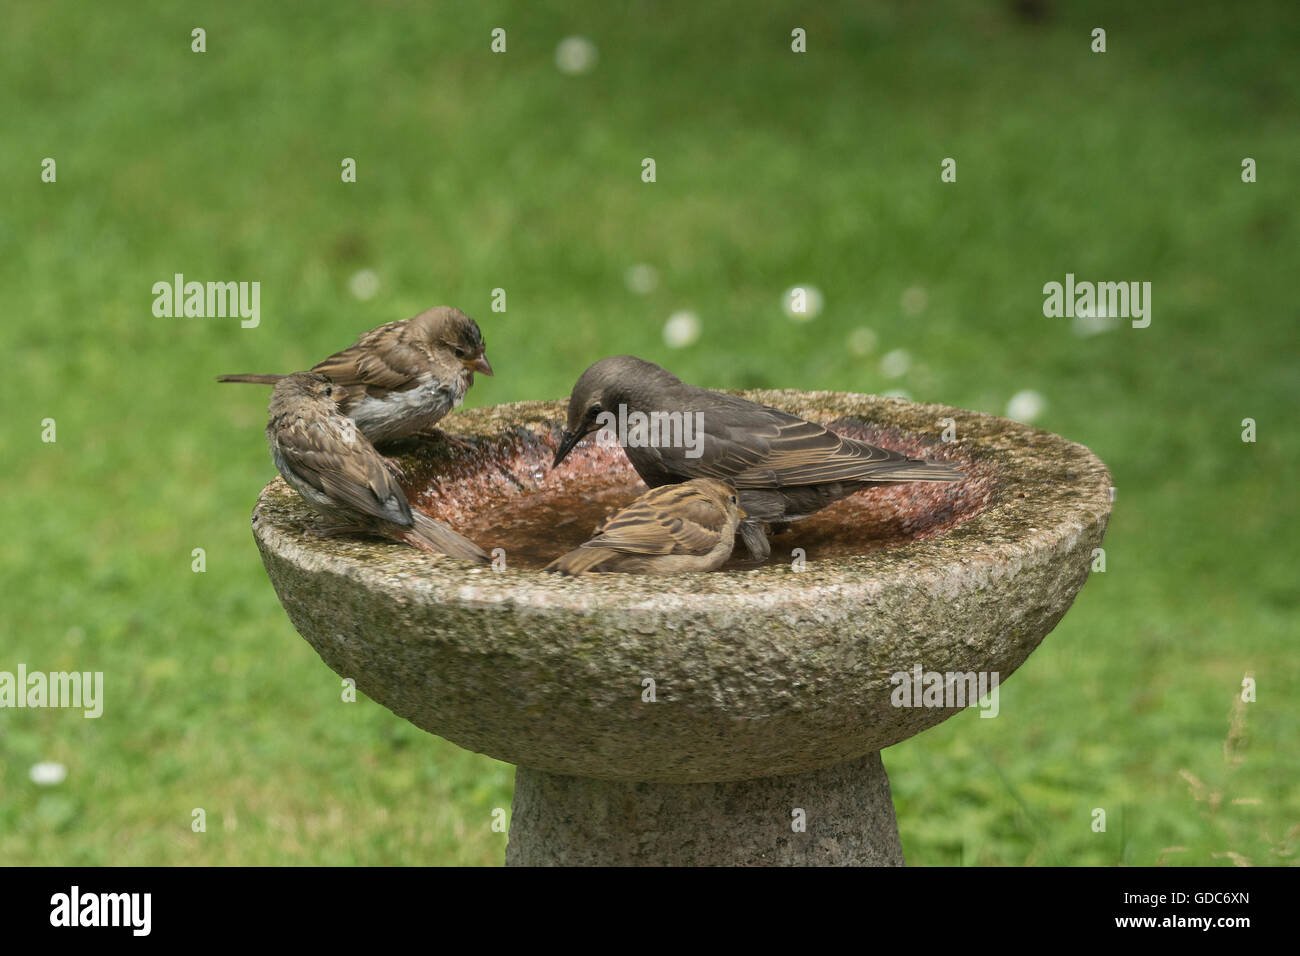 Birds in a bird bath. Stock Photo